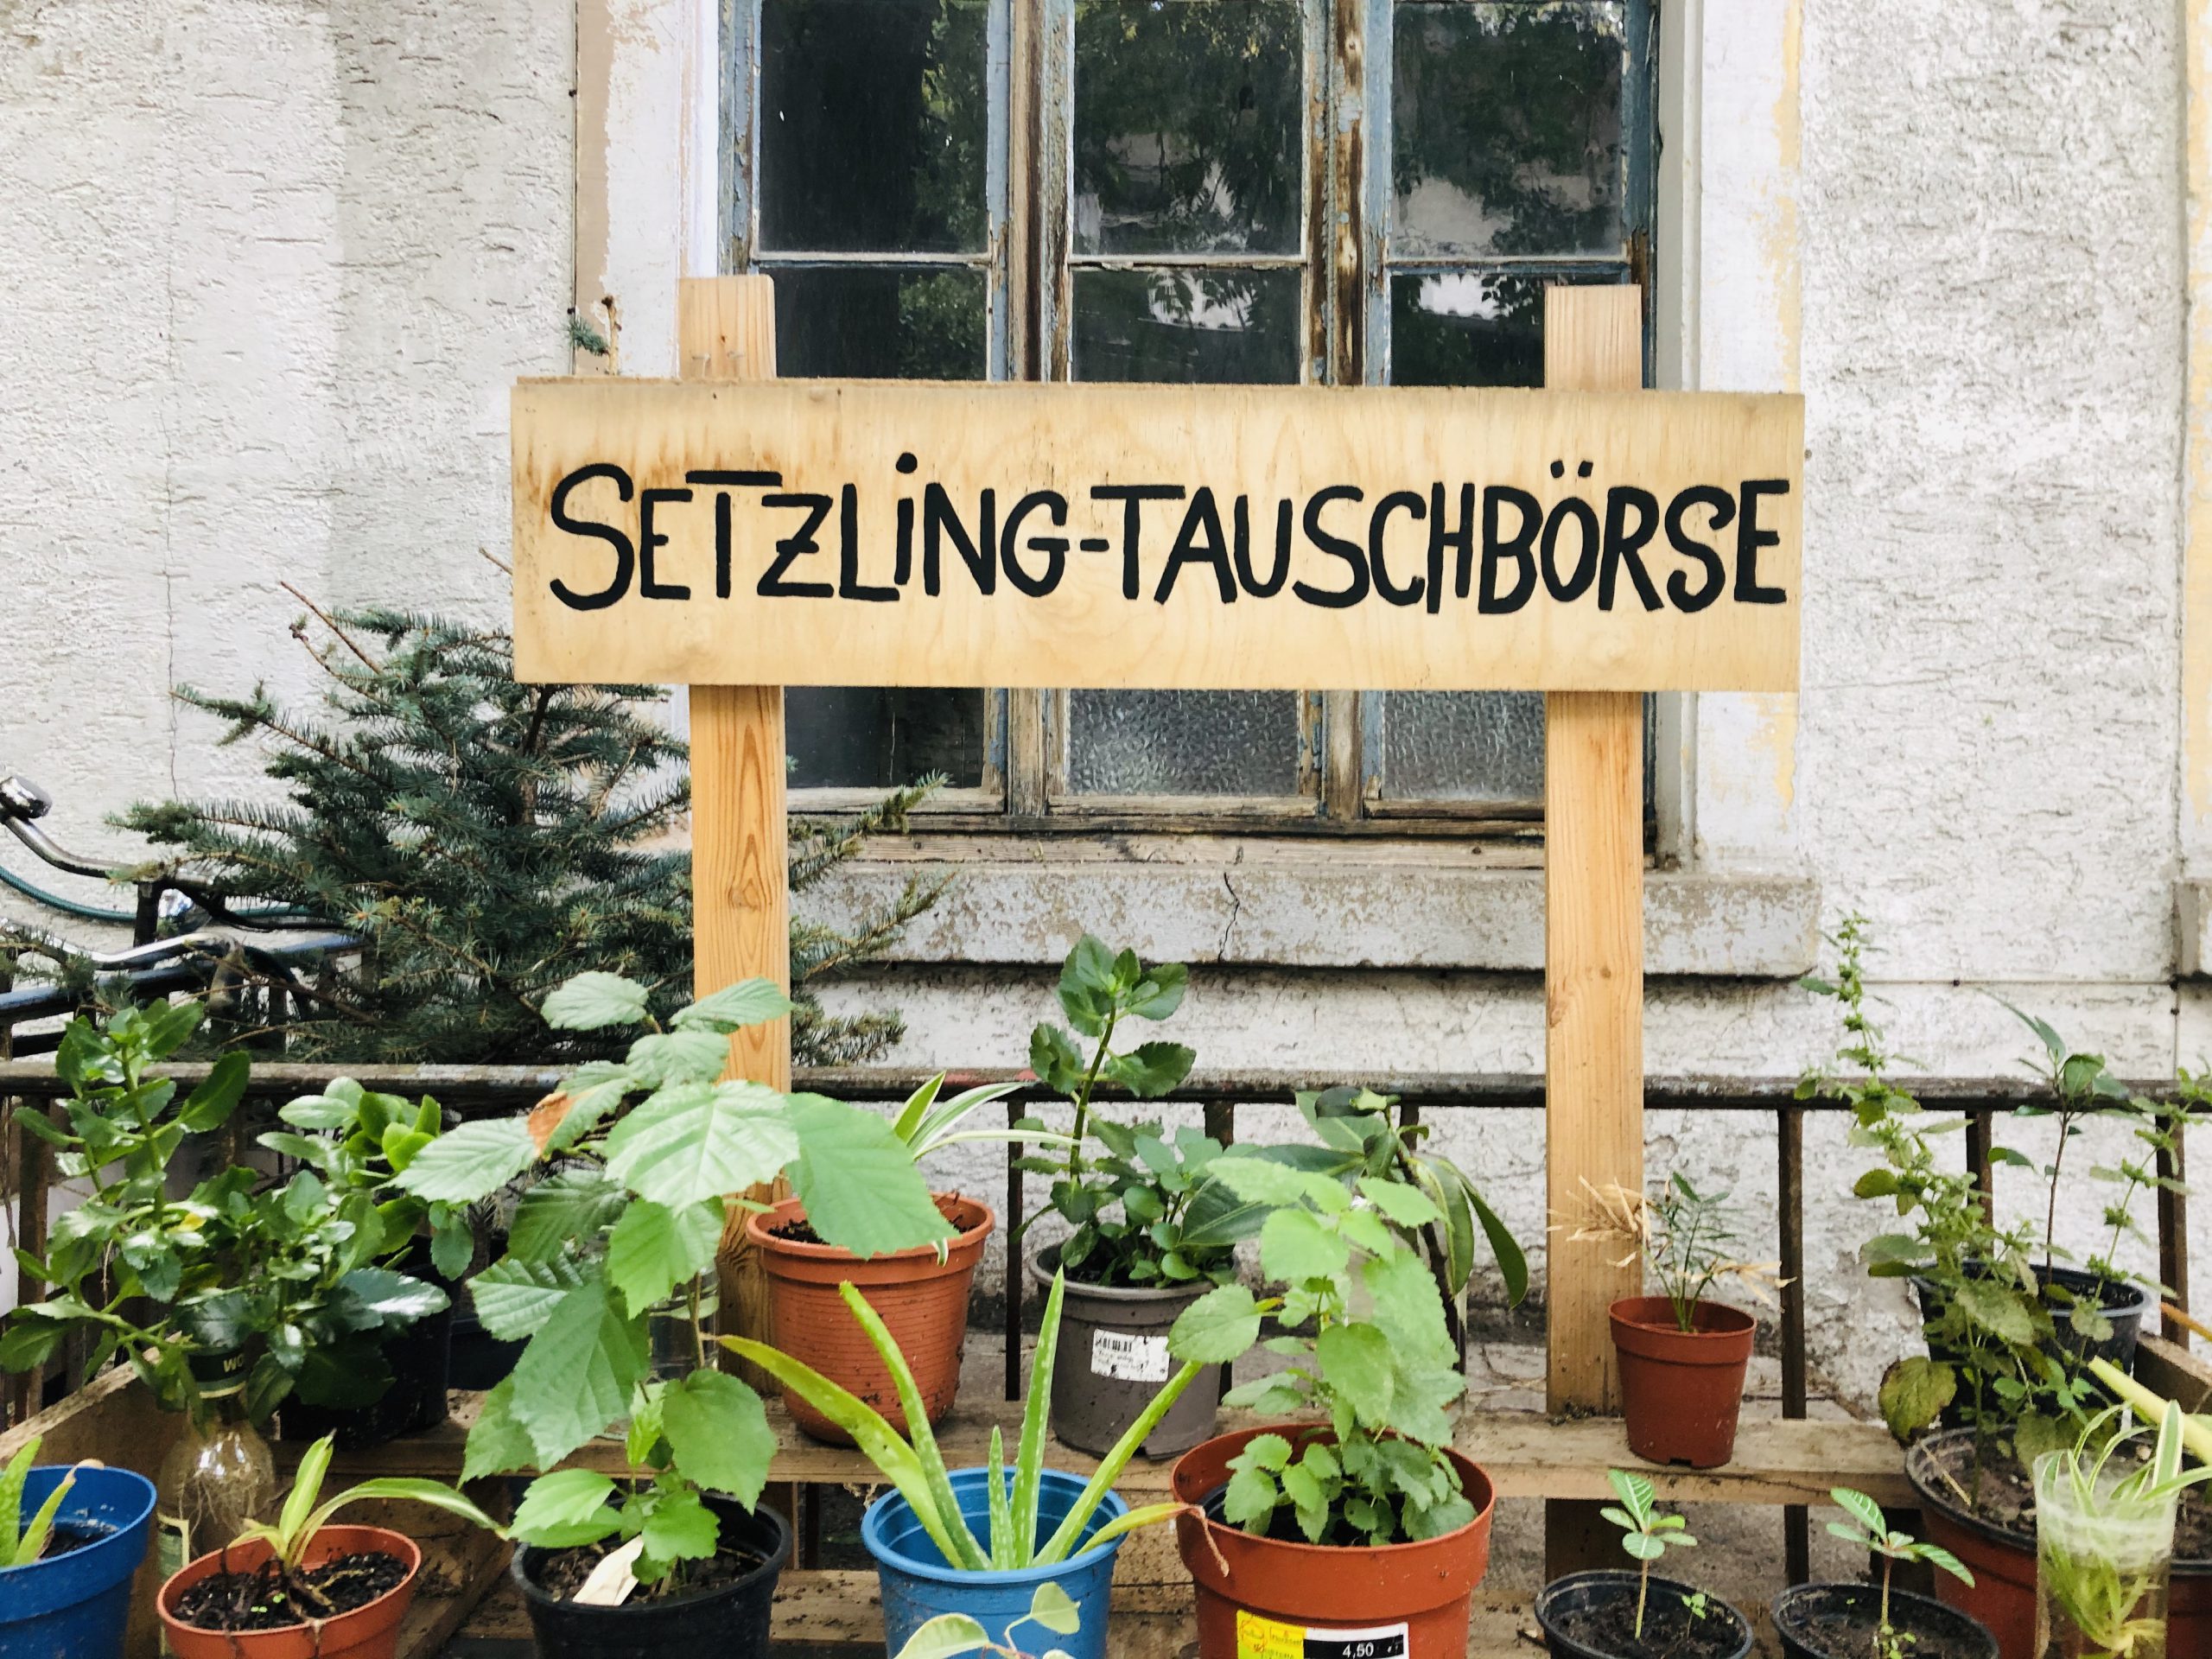 Die neue Pflanzen-Tauschbörse in Karlsruhe